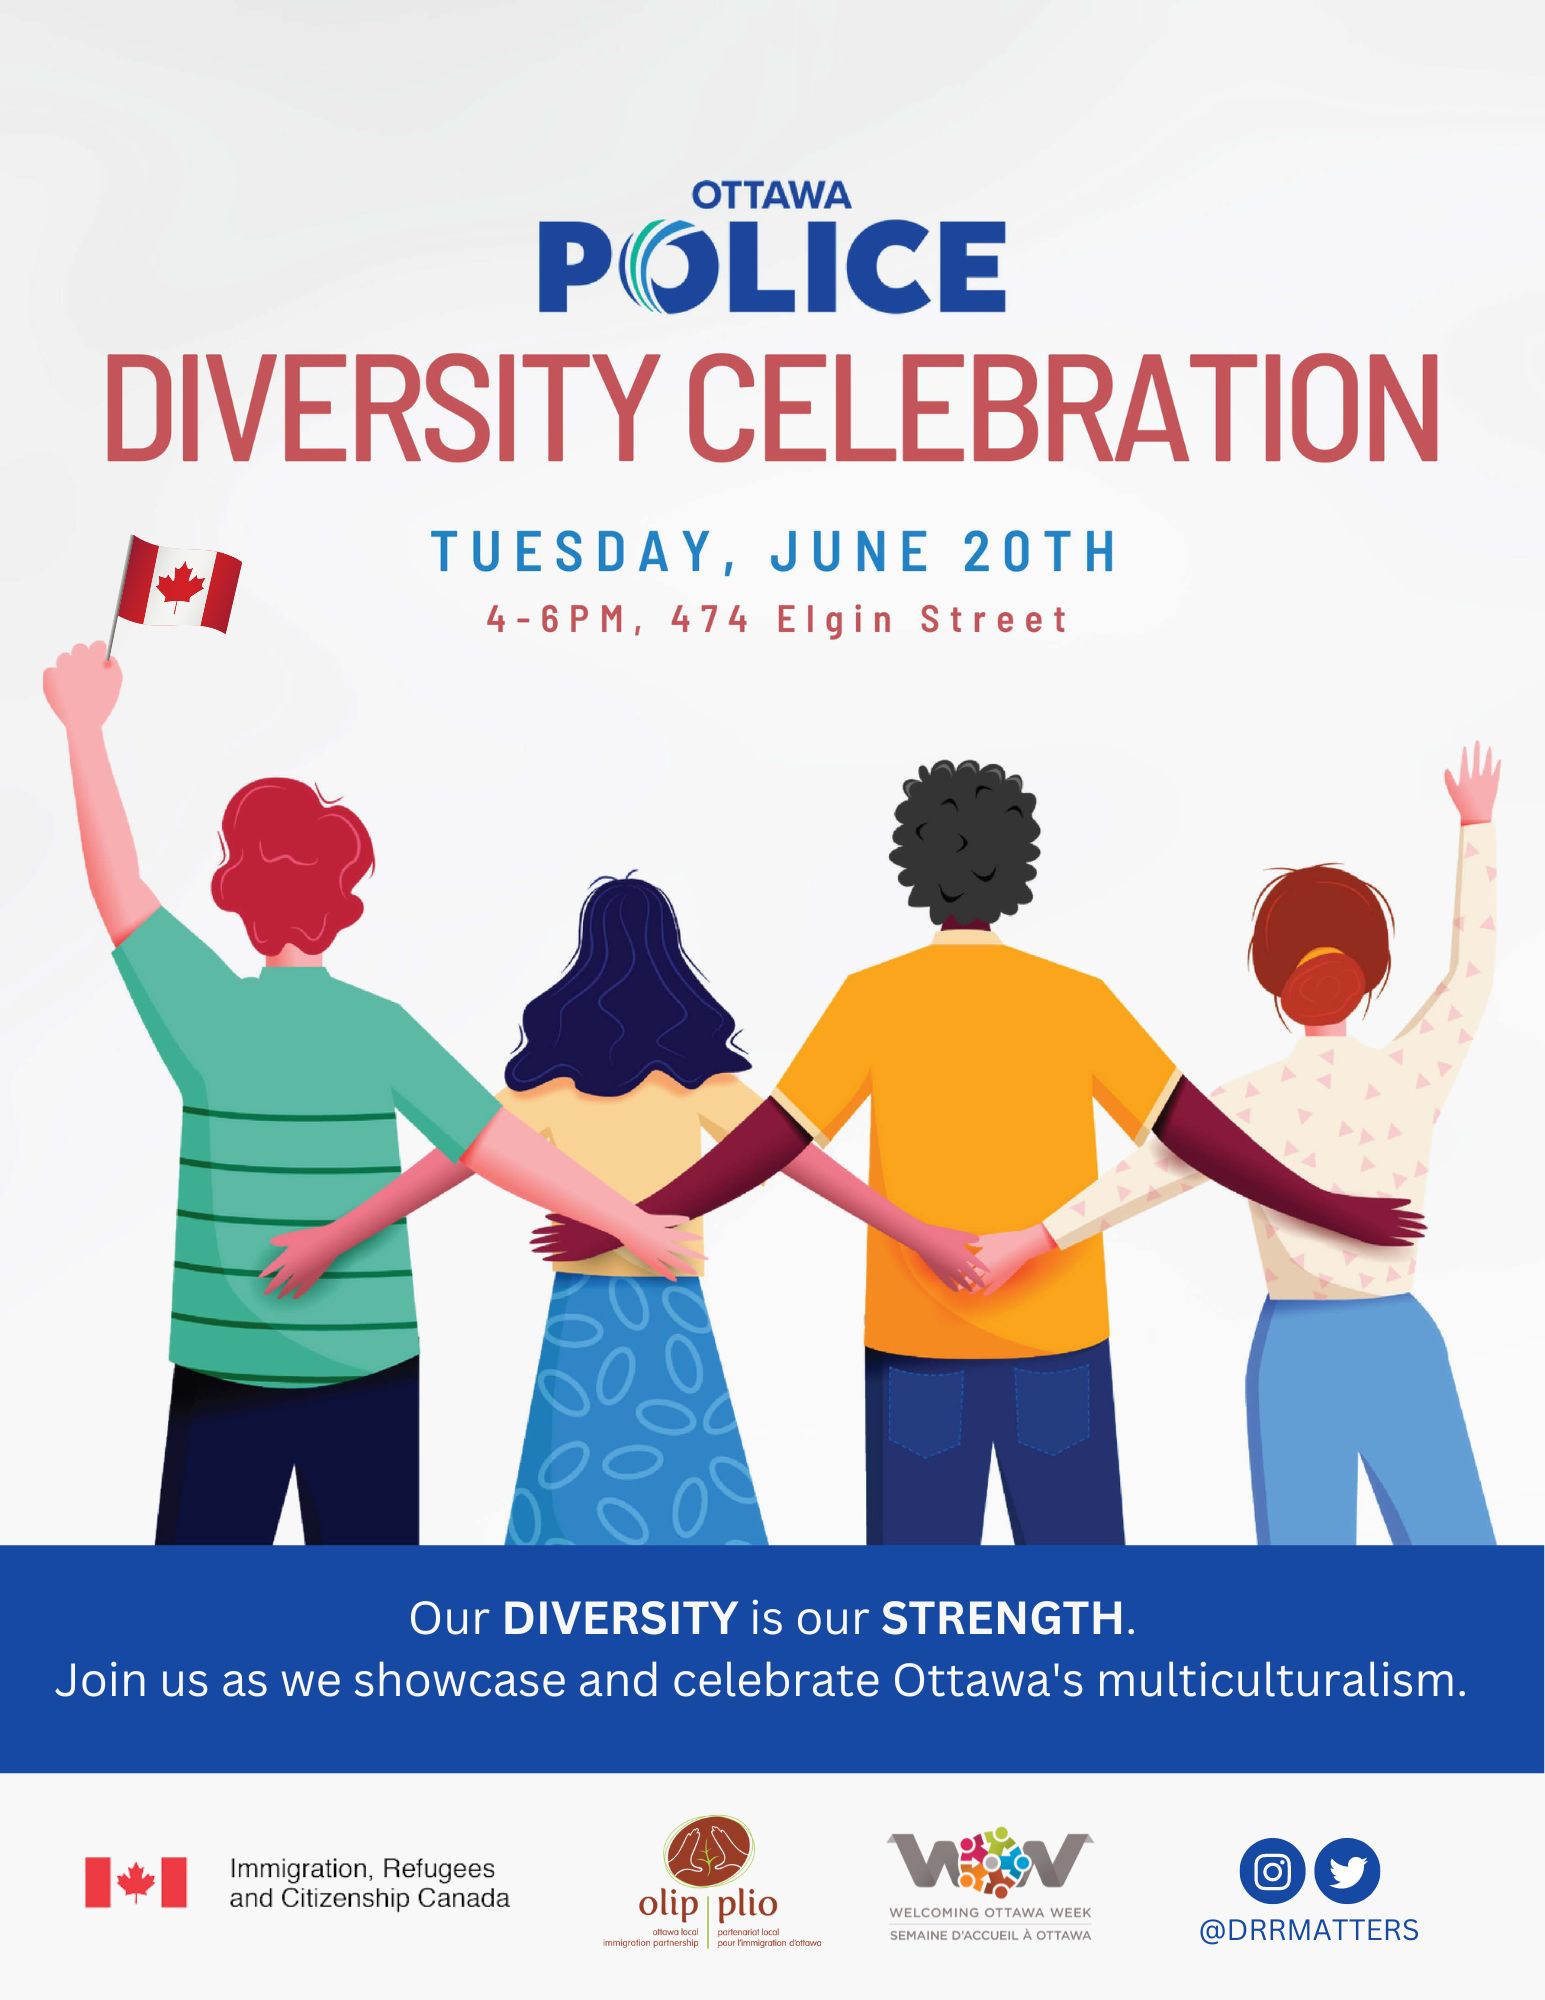 Ottawa Police Service Diversity Day Celebration on June 20th